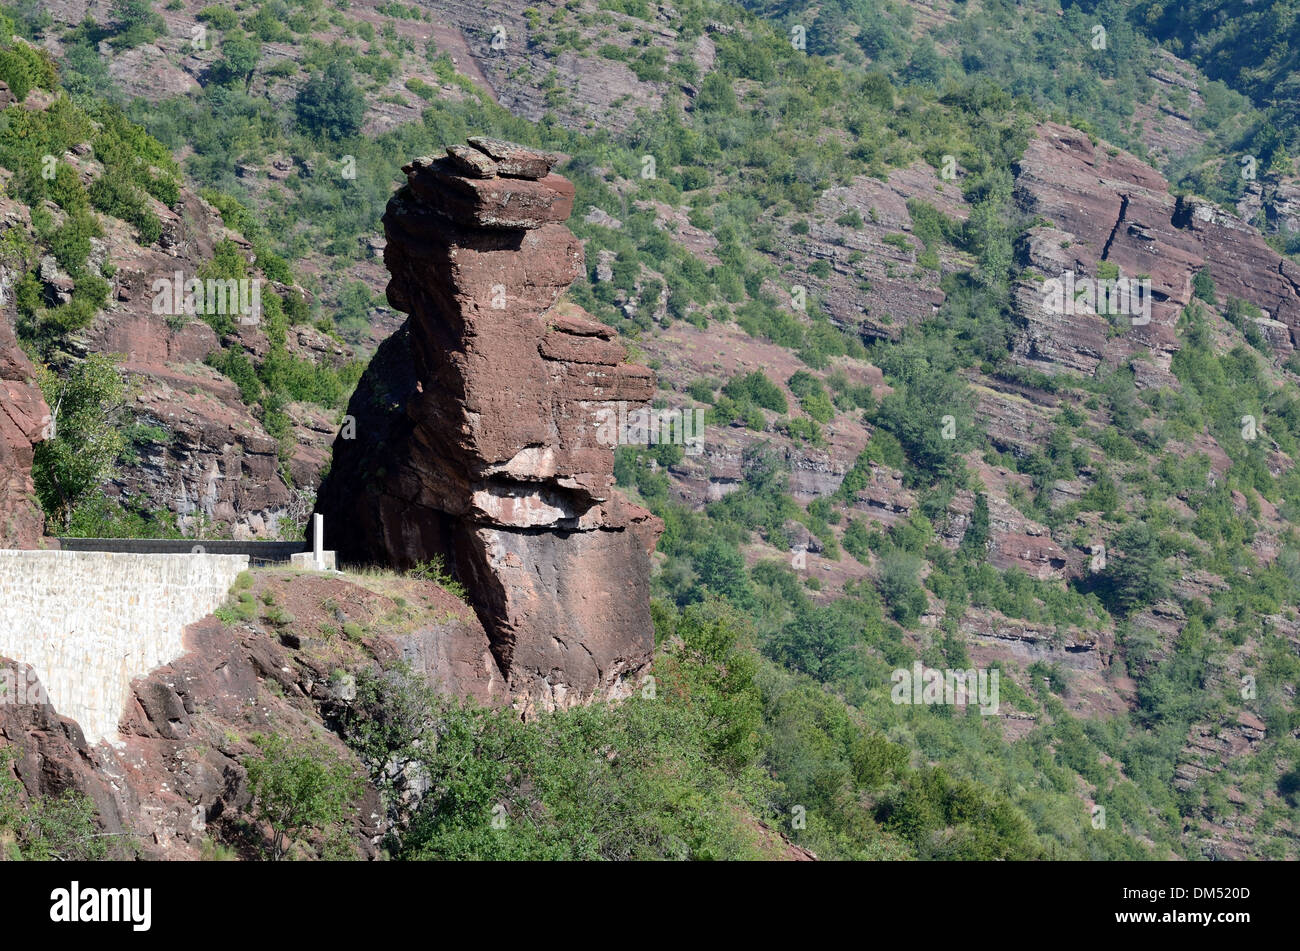 Tête de Femme Rock Formation Gorges Du Daluis Haut-Var Alpes-Maritimes France Banque D'Images